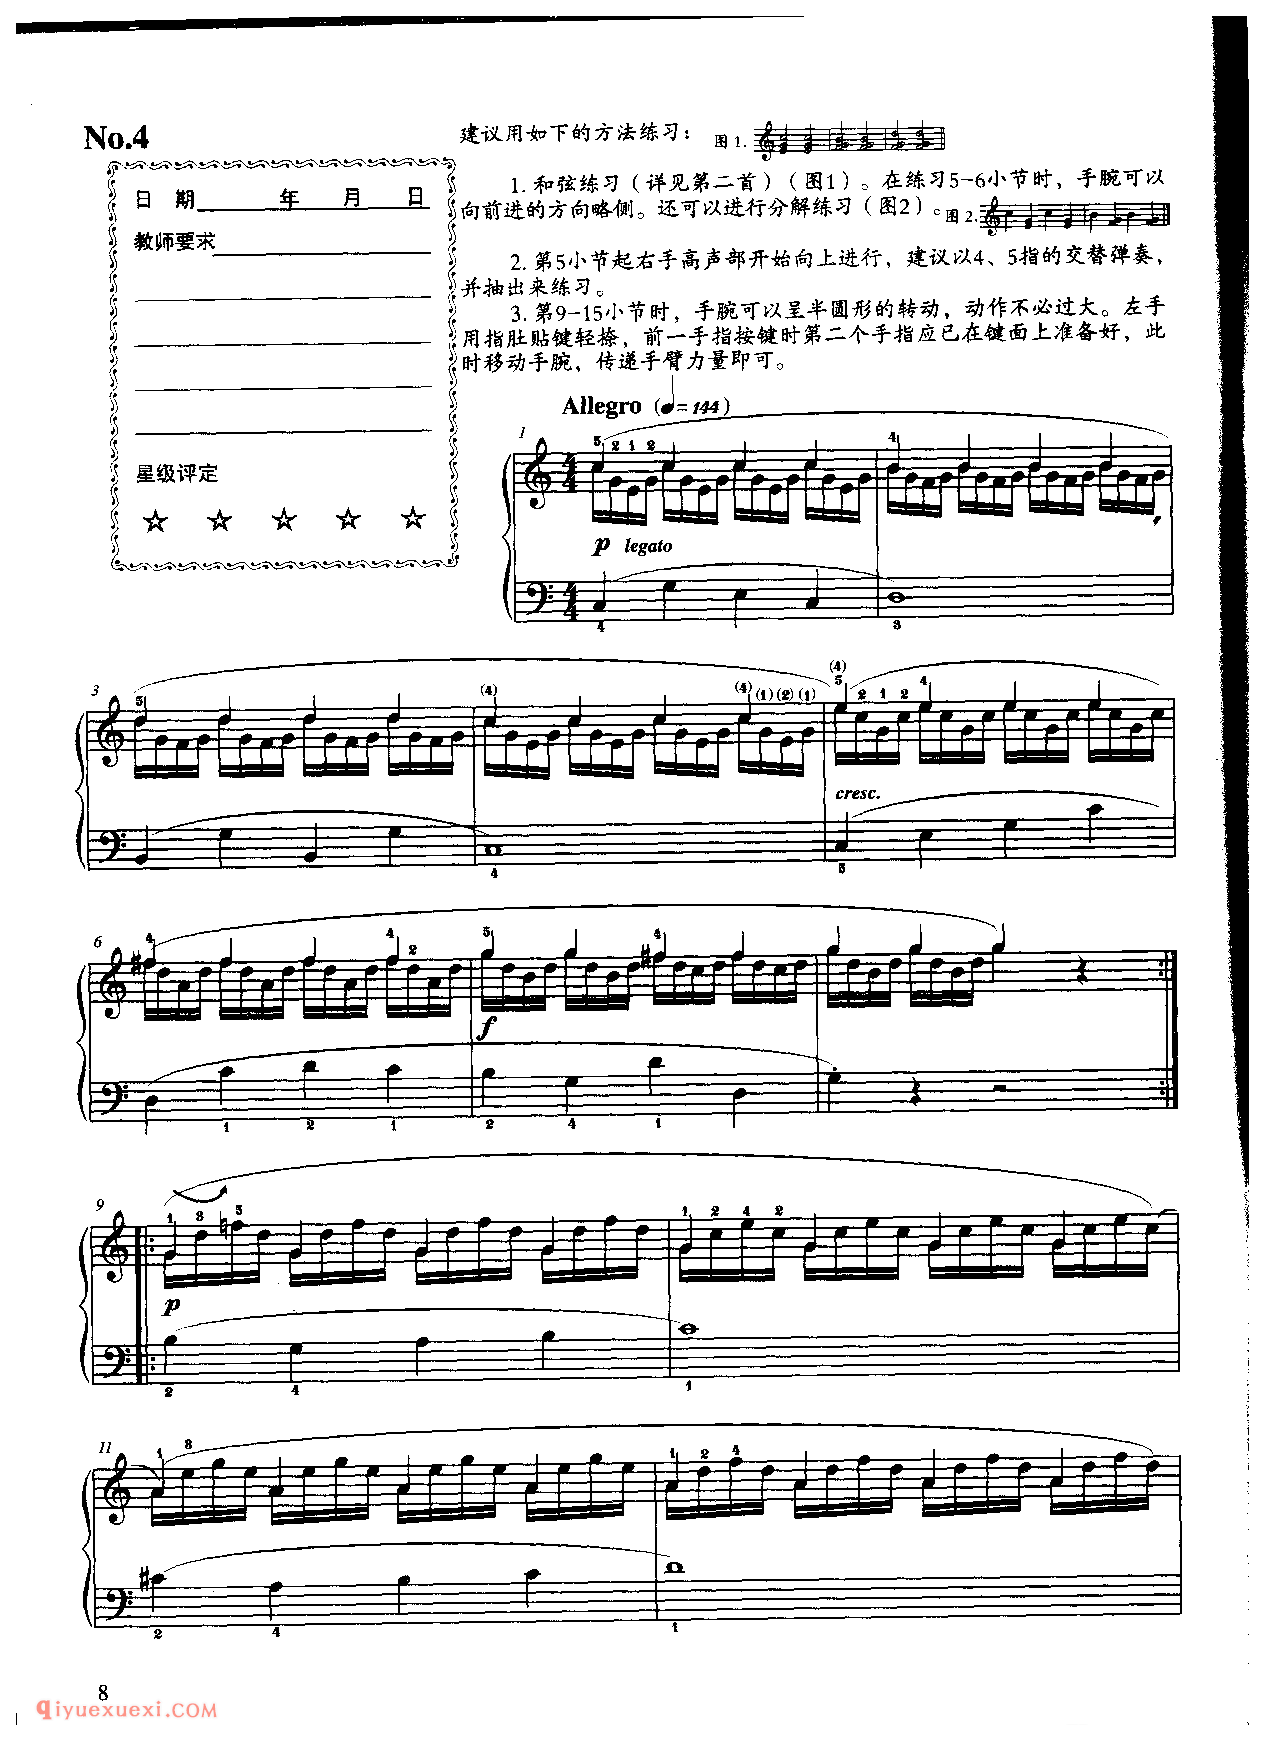 《车尔尼钢琴流畅练习曲作品849》第4首_车尔尼849钢琴练习曲 No.4